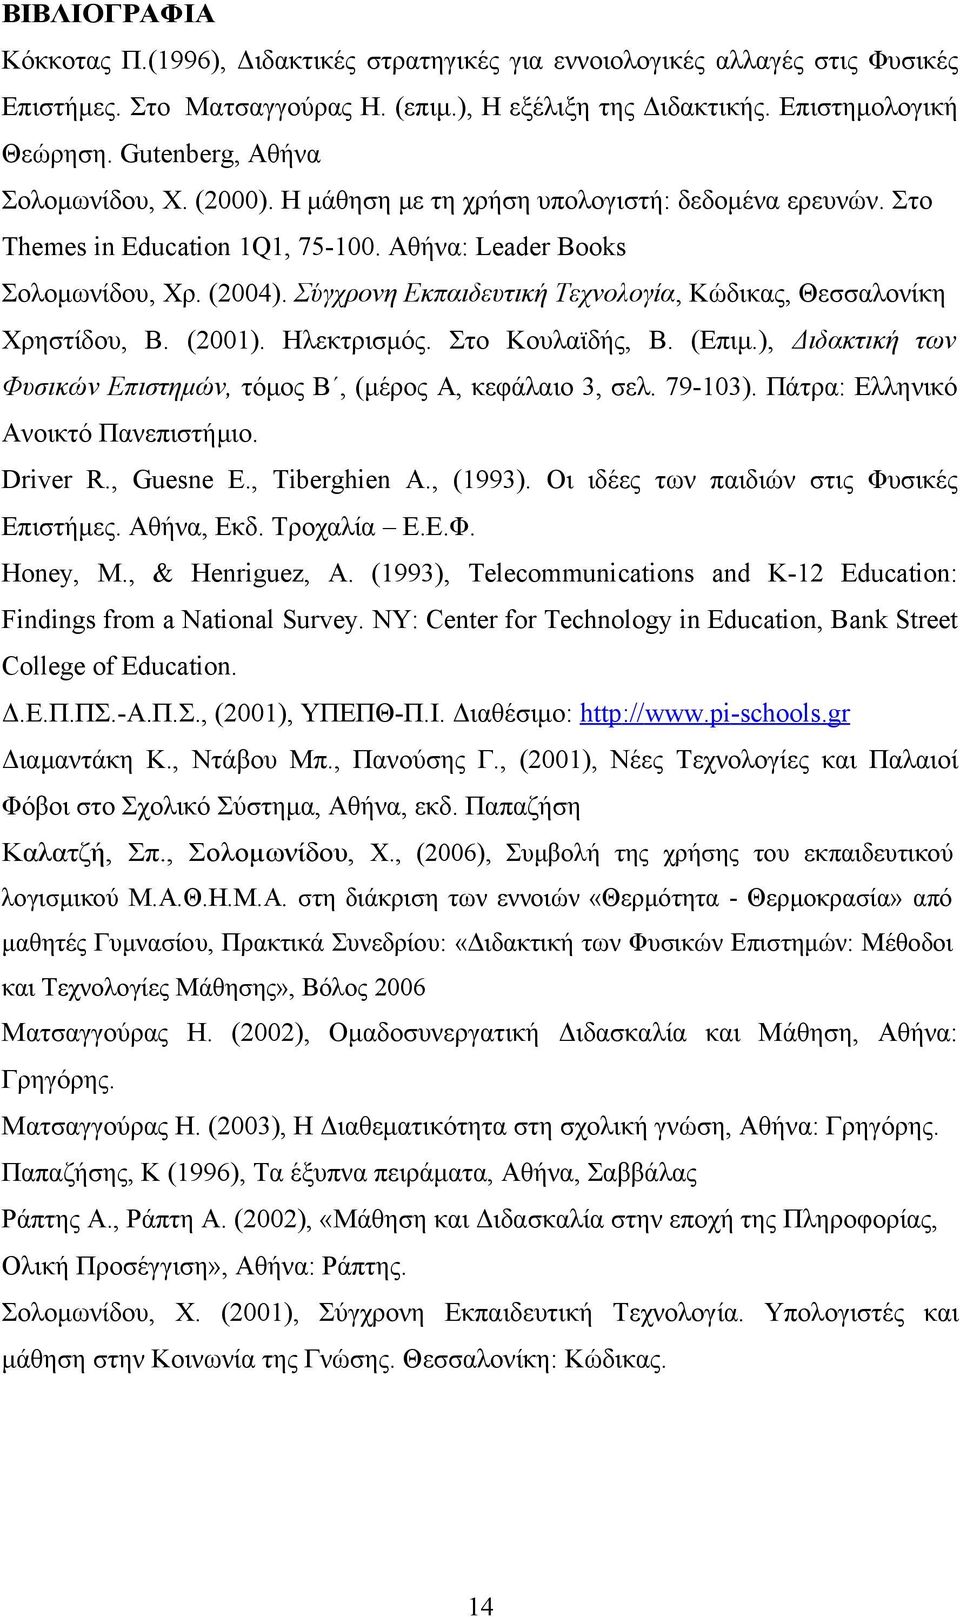 Σύγχρονη Εκπαιδευτική Τεχνολογία, Κώδικας, Θεσσαλονίκη Χρηστίδου, Β. (2001). Ηλεκτρισμός. Στο Κουλαϊδής, Β. (Επιμ.), Διδακτική των Φυσικών Επιστημών, τόμος Β, (μέρος Α, κεφάλαιο 3, σελ. 79-103).